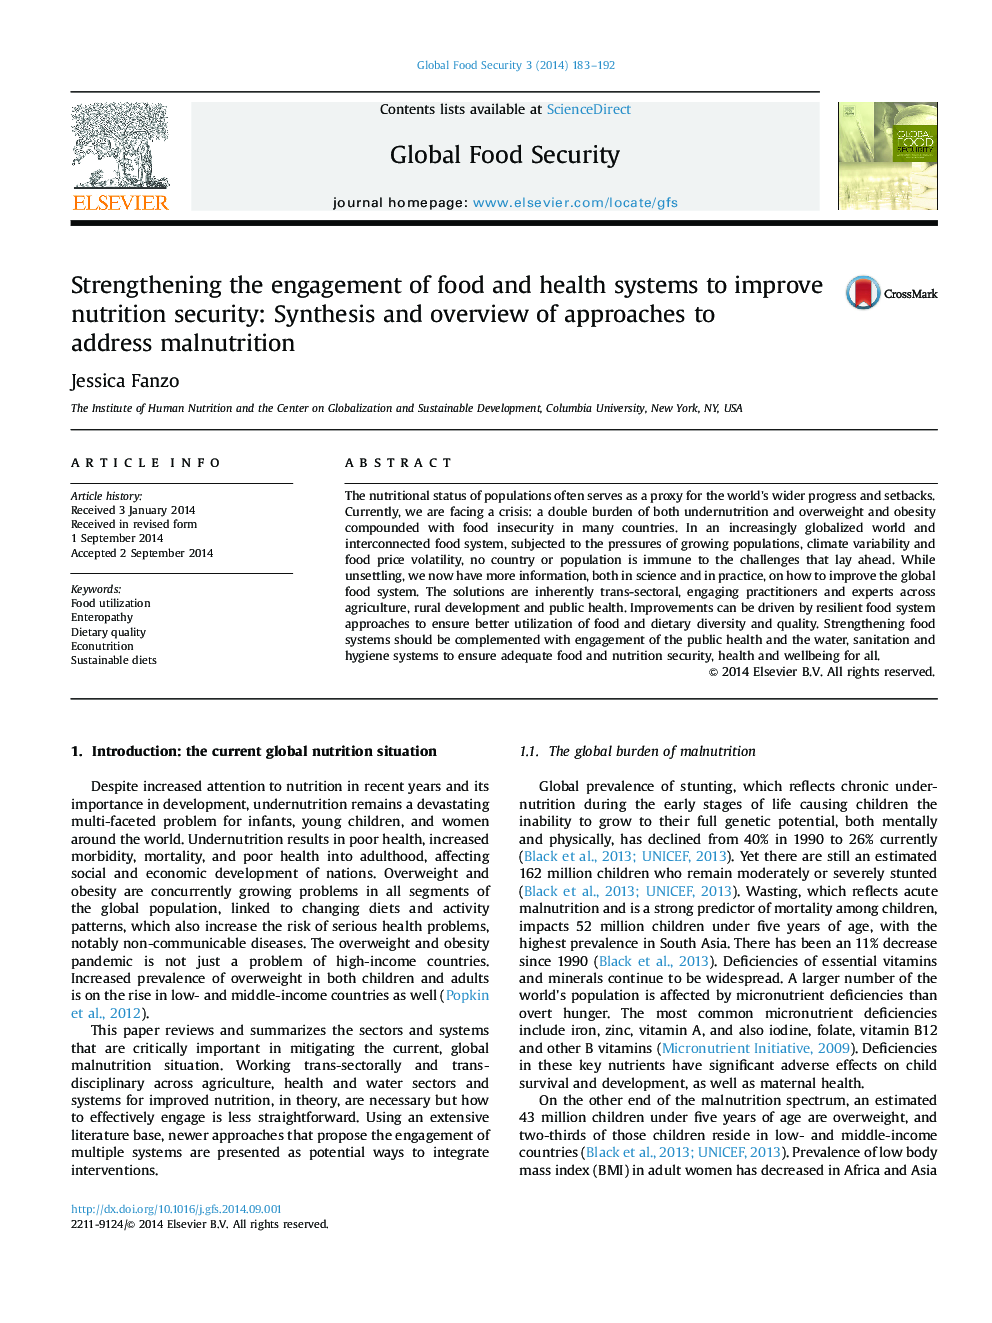 تقویت مشارکت سیستم های مواد غذایی و بهداشتی برای بهبود امنیت غذایی: تهیه و ارزیابی رویکردهای مربوط به سوء تغذیه 